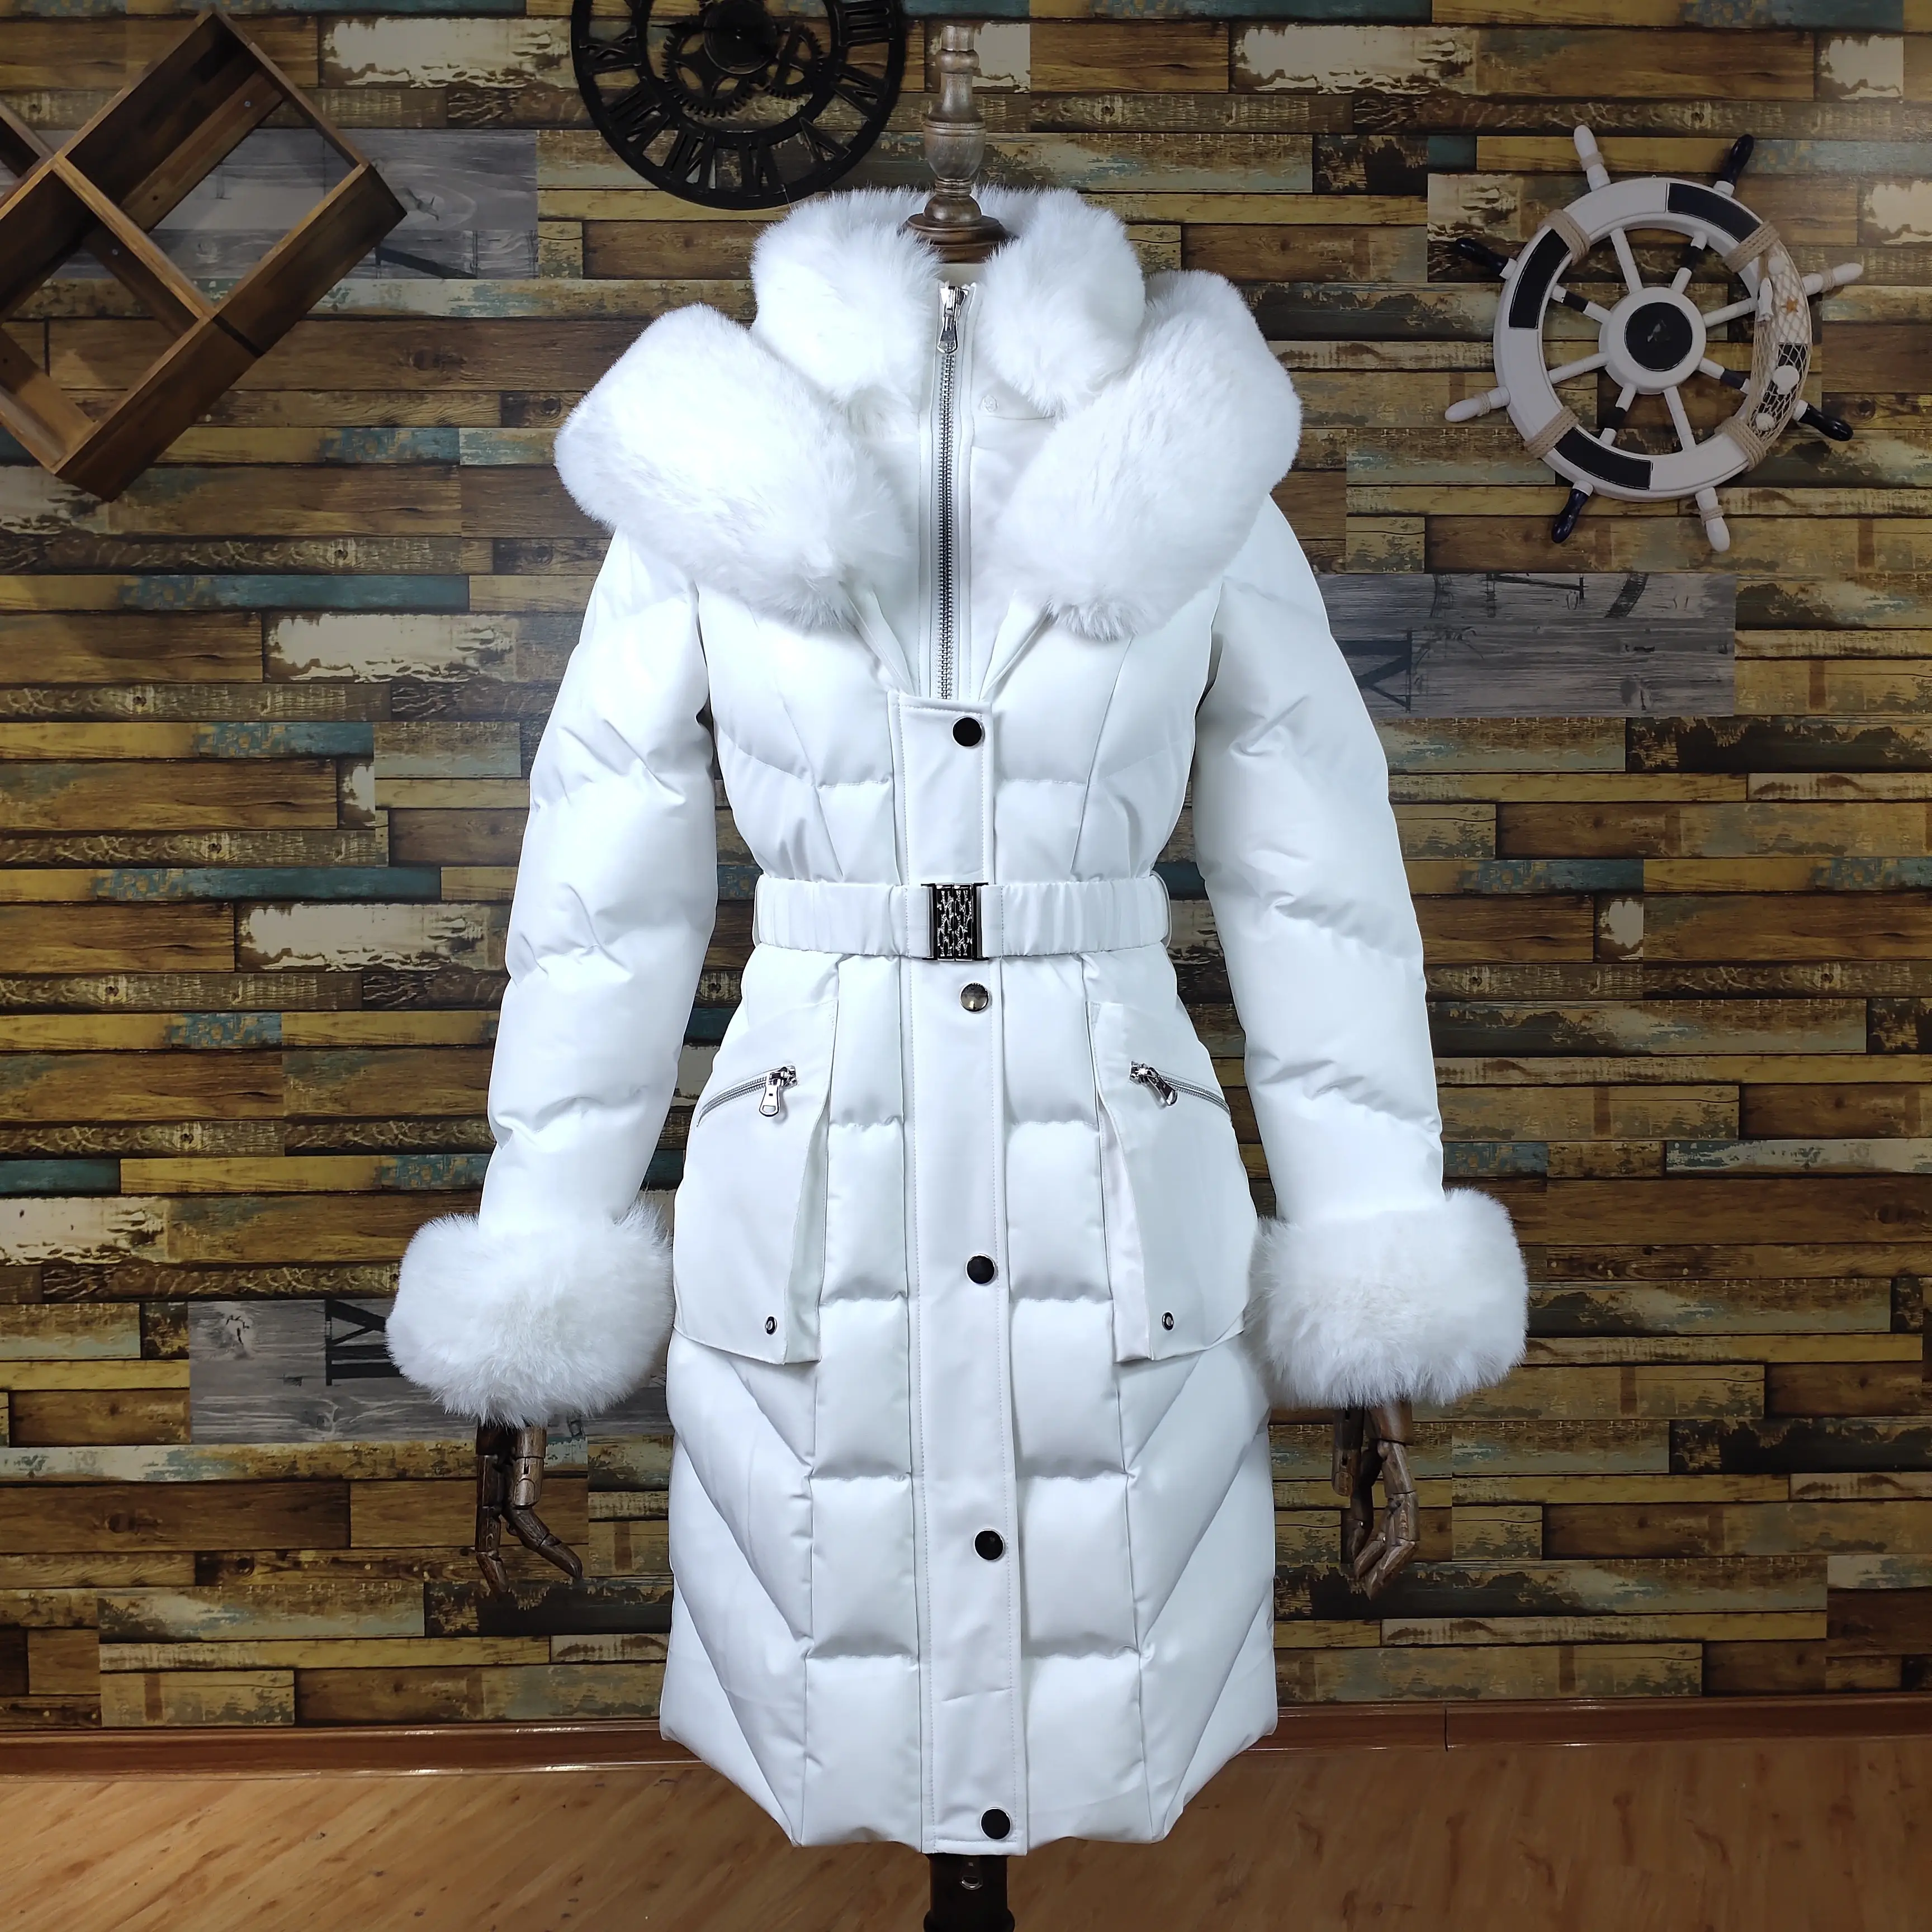 Custom White Women Luxury Fashion Jacket Manufacture Coat Winter Warm Long Parka With Belt